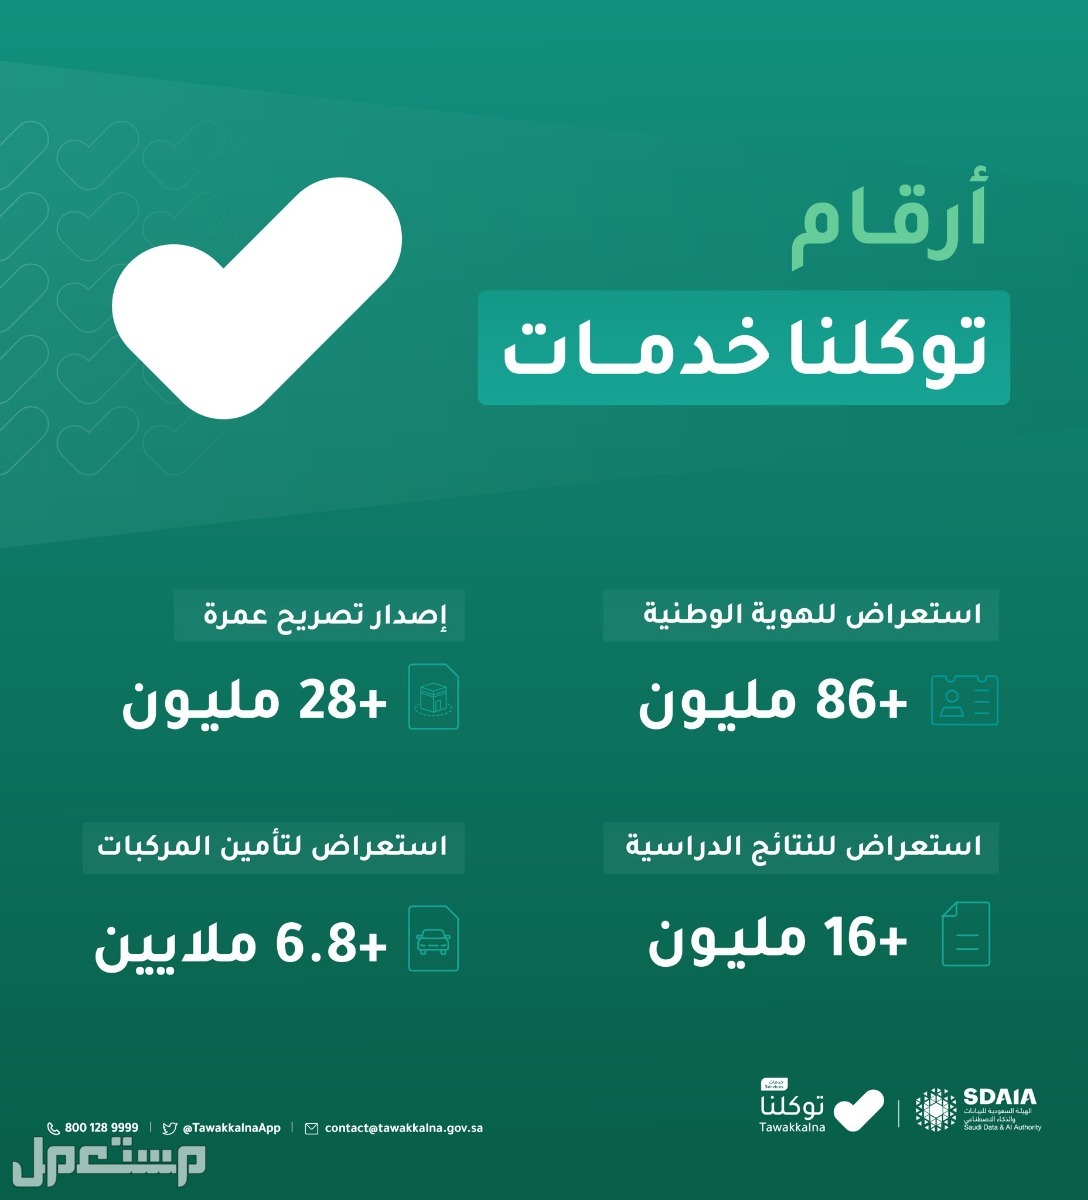 خطوات استعراض إعدادات الحساب في توكلنا خدمات في مصر أرقام توكلنا